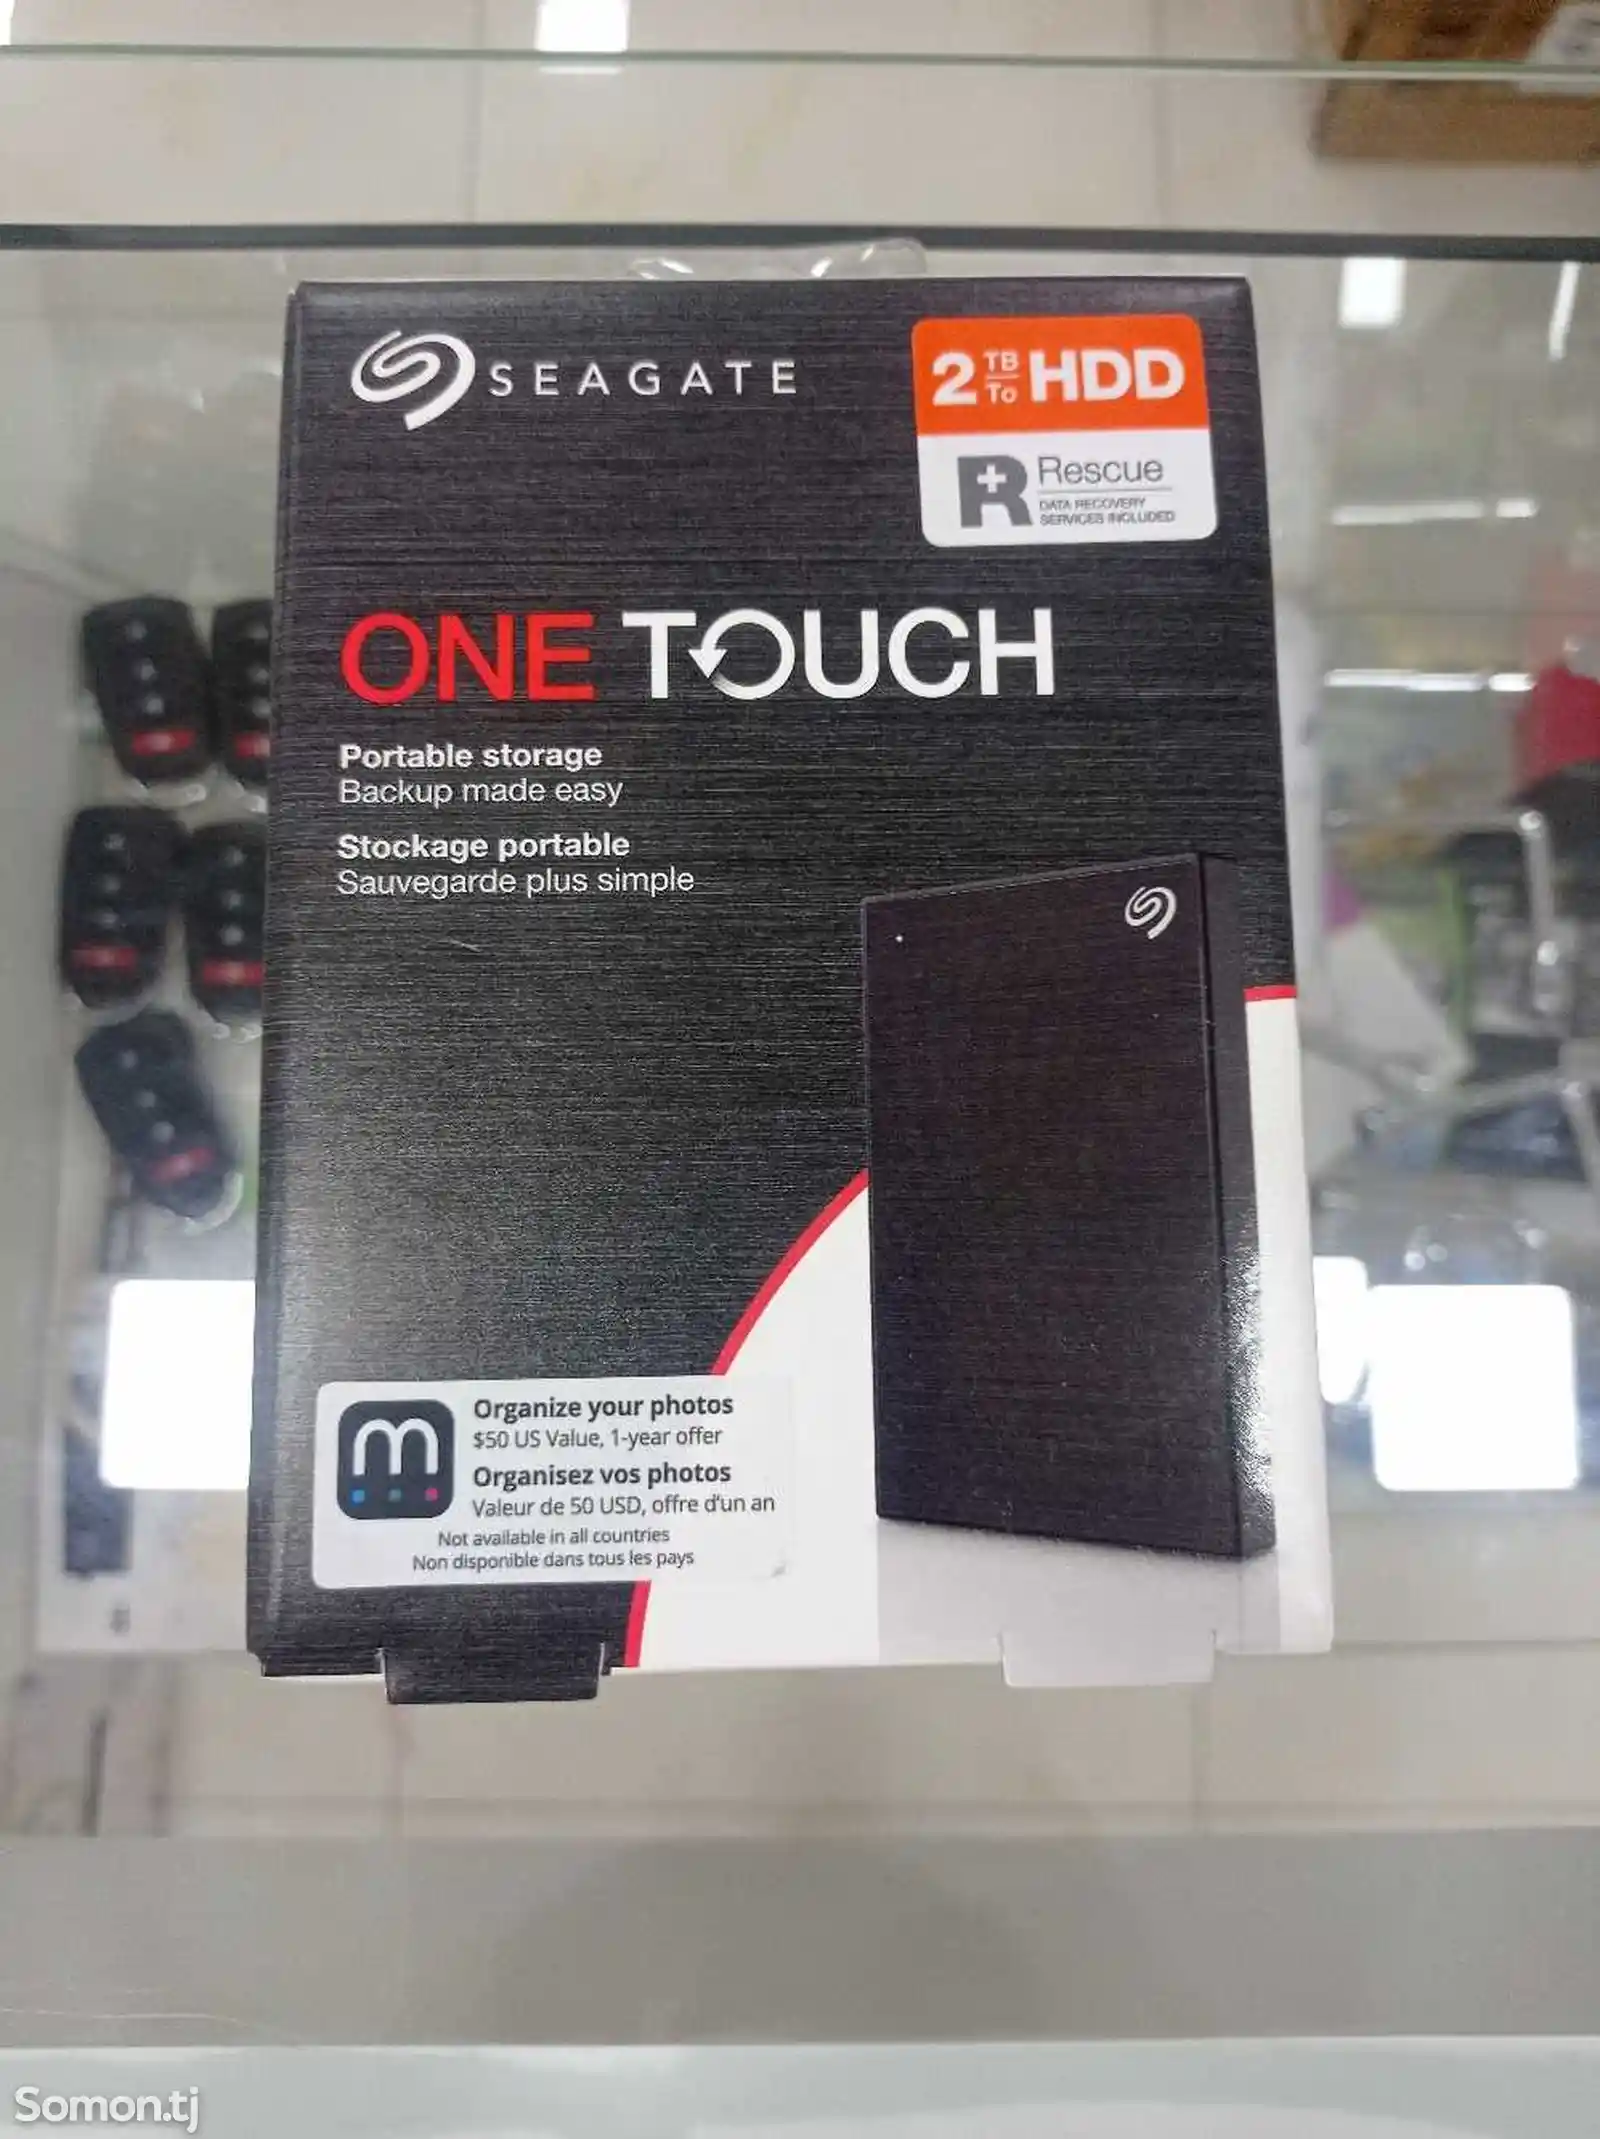 One Touch 2 TB HDD жёсткий диск